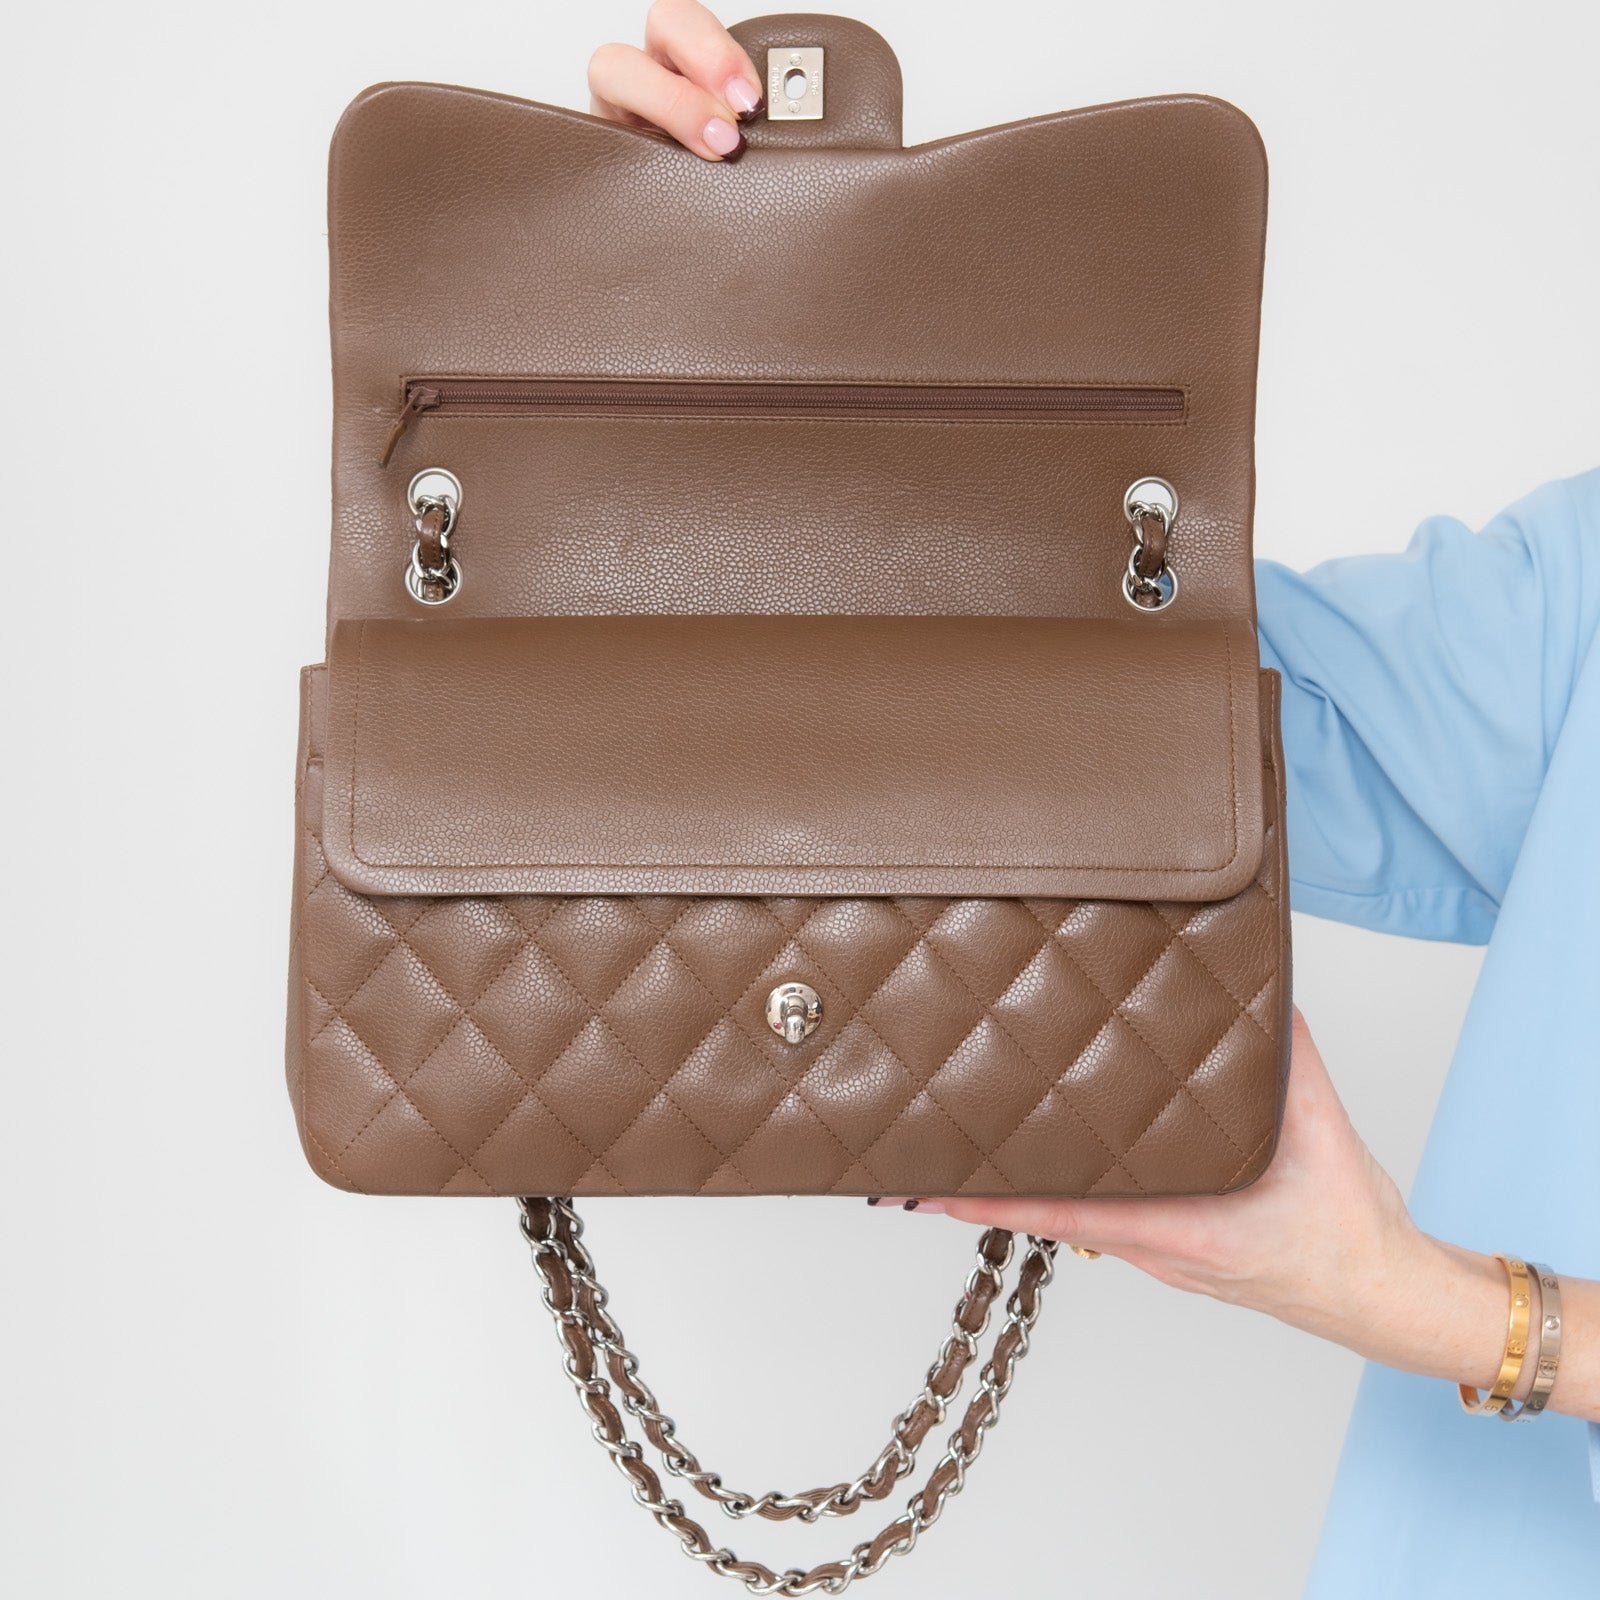 Chanel Brown Double Flap Jumbo Bag - Image 10 of 15